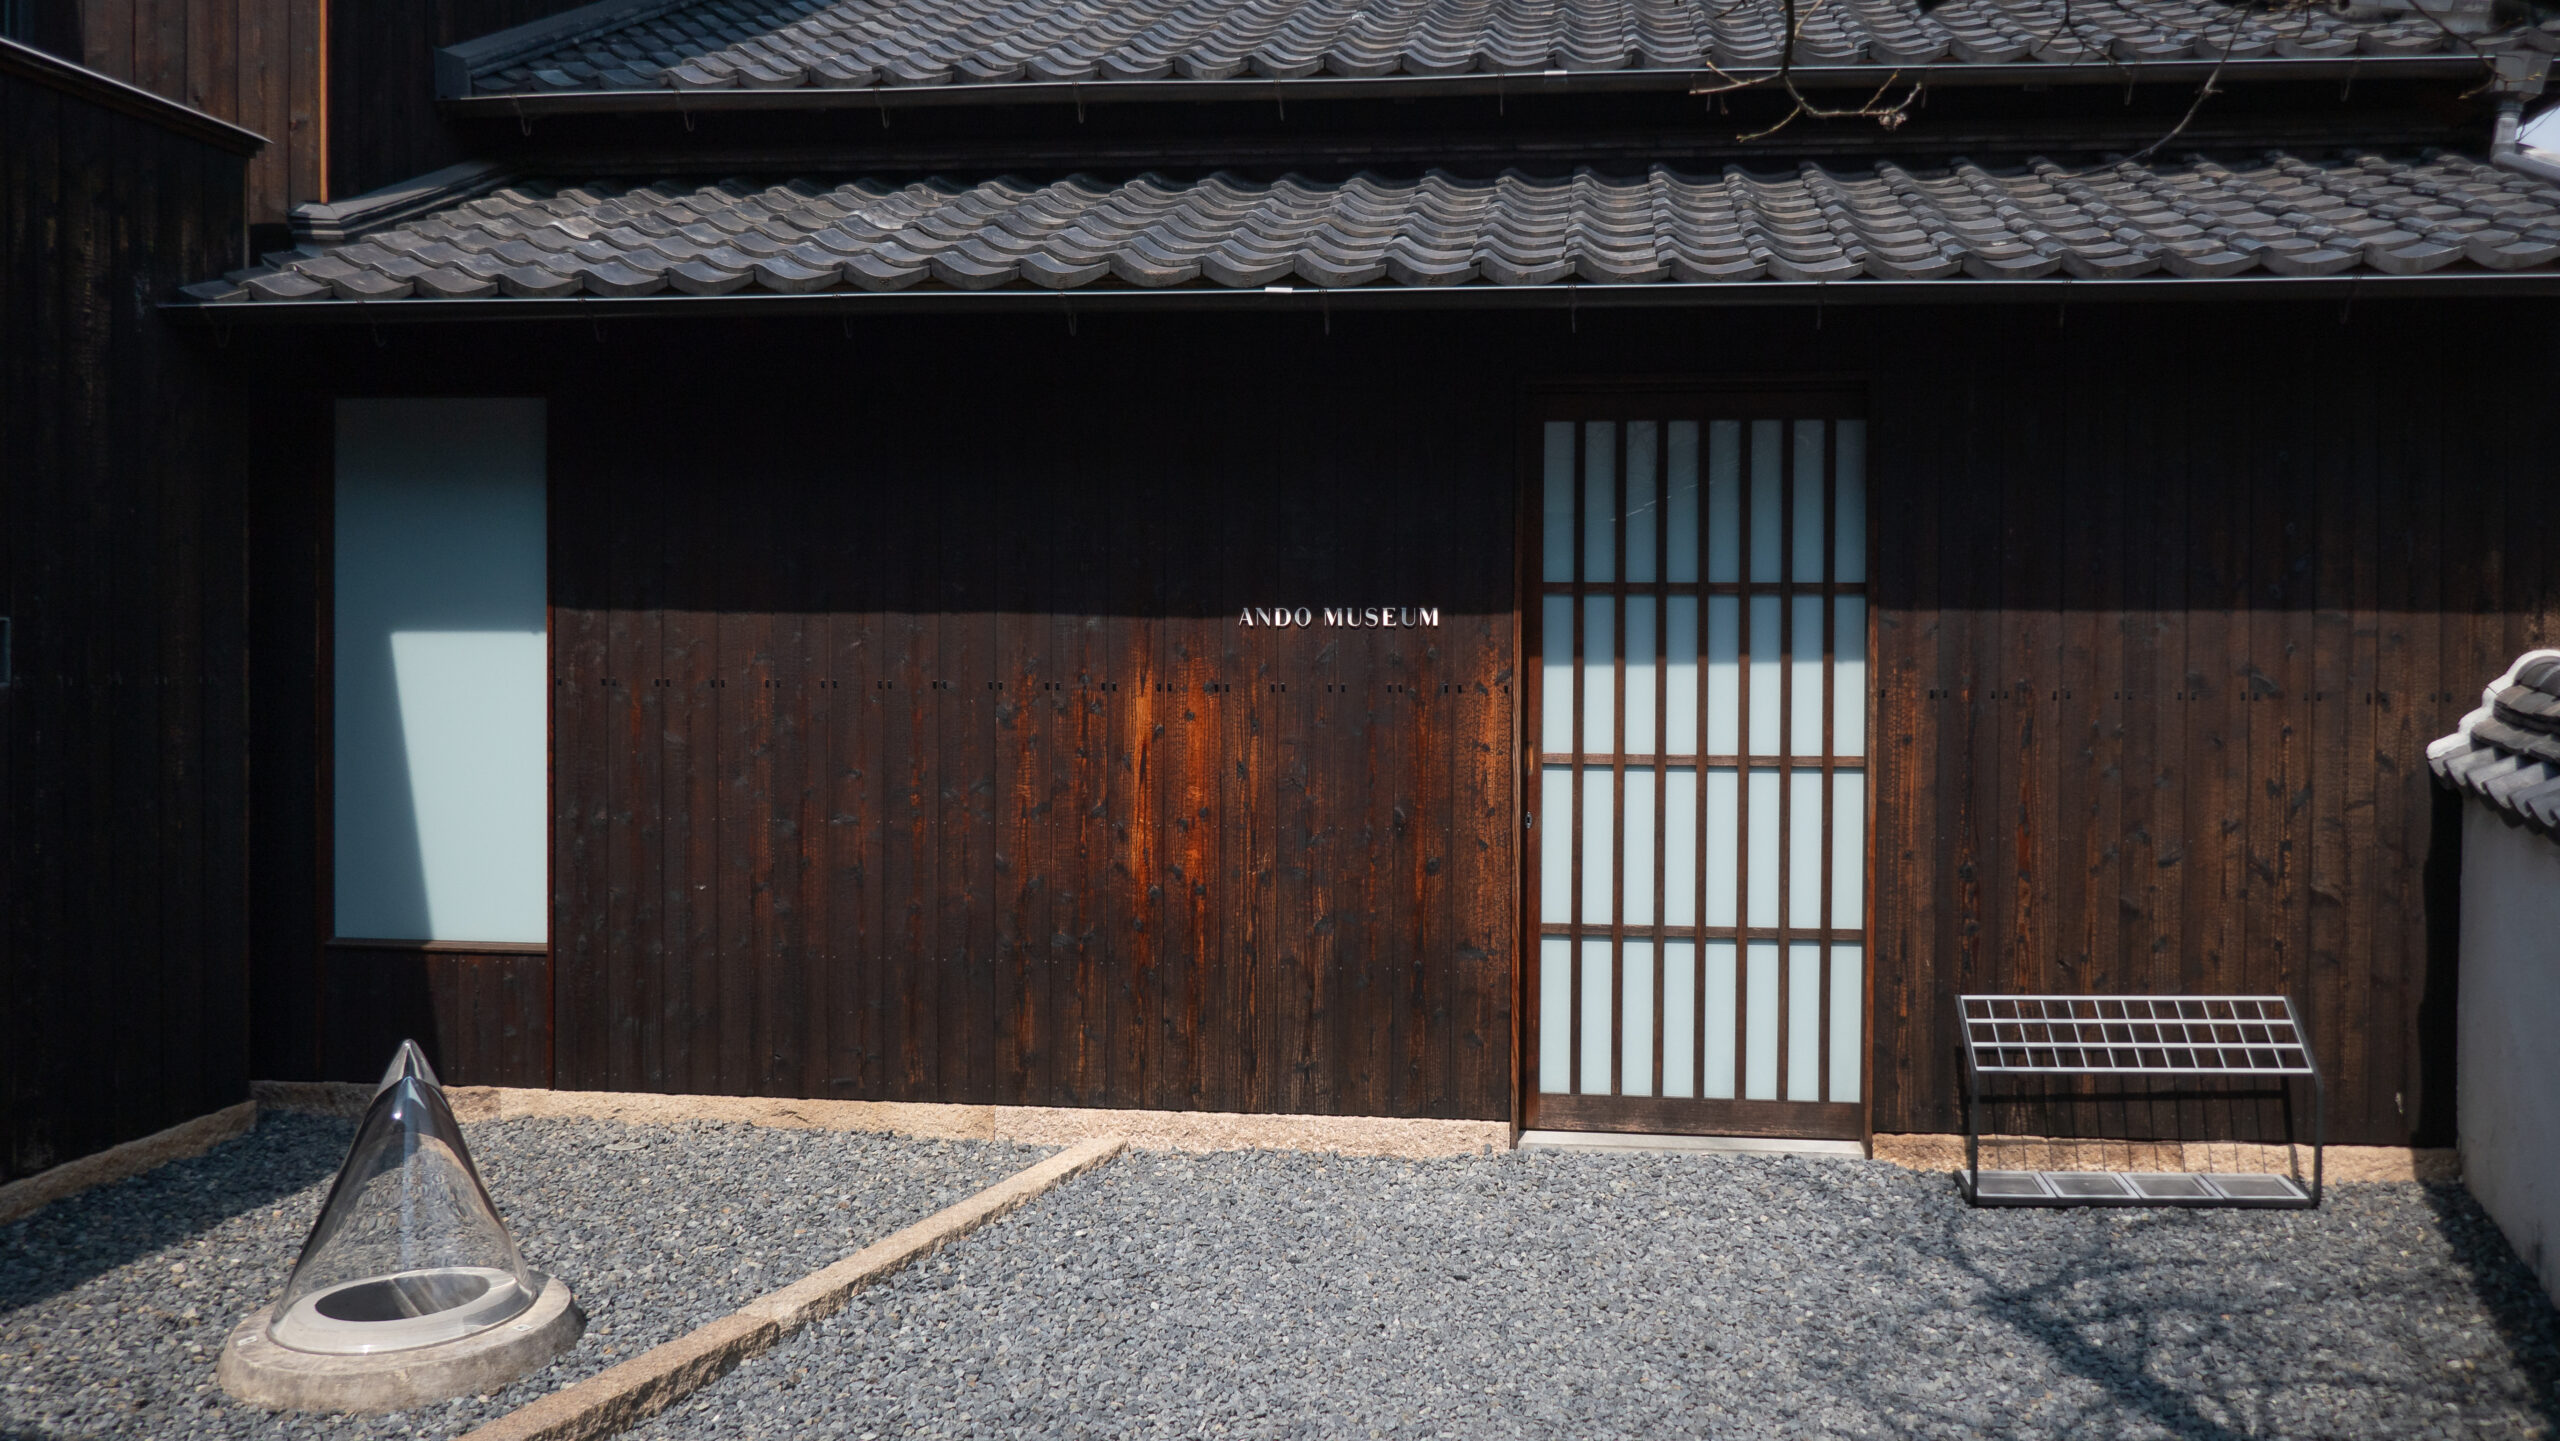 Ando Museum by Tadao Ando on Naoshima